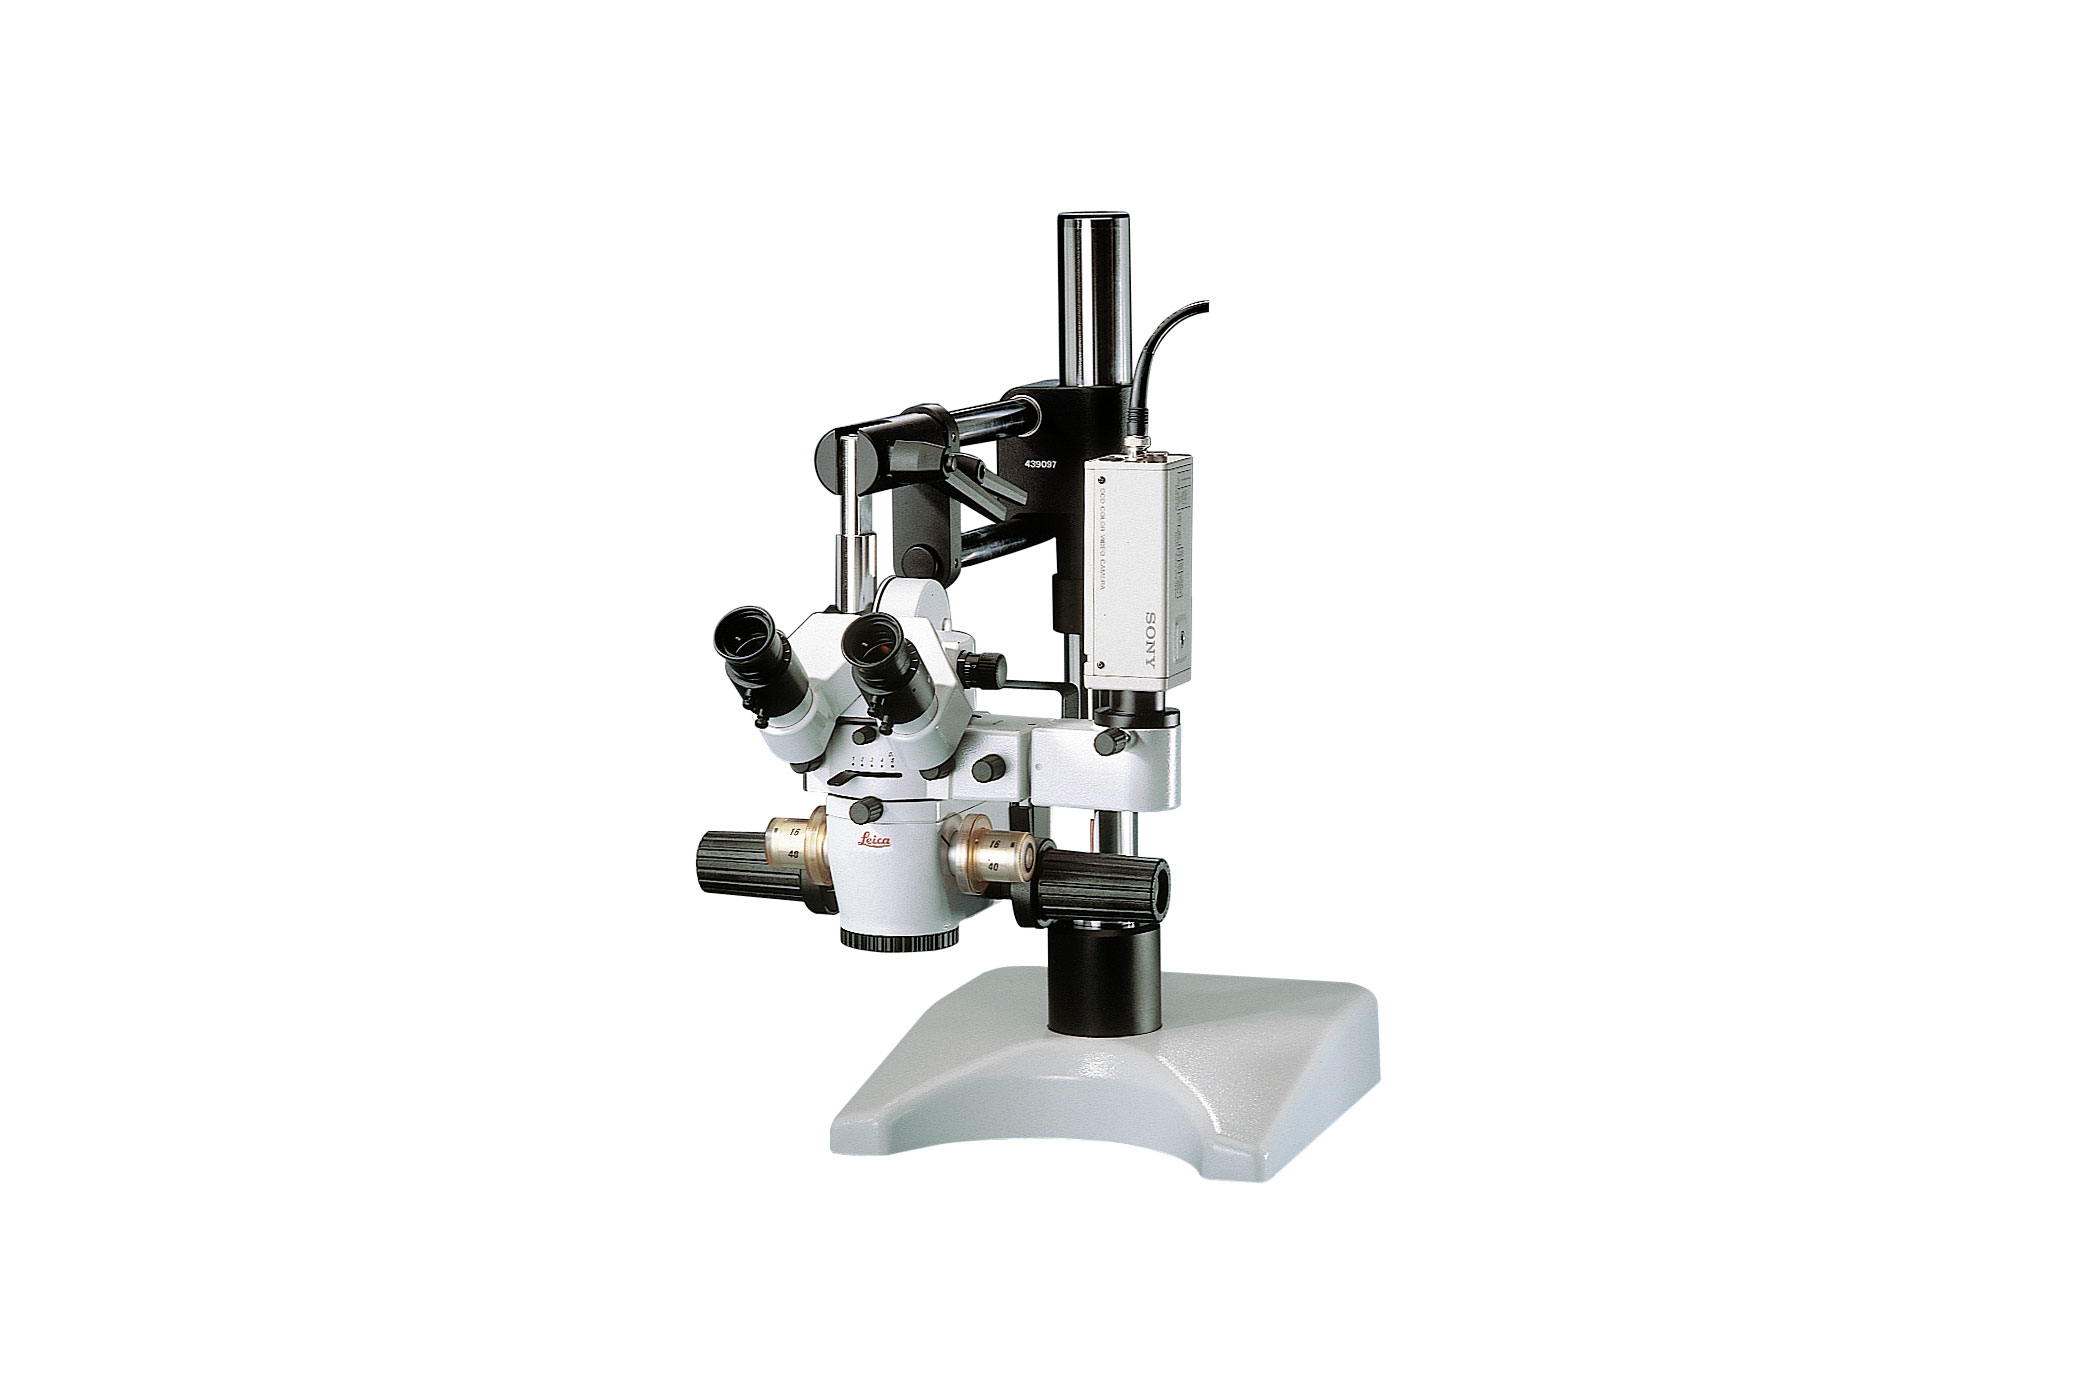 Microscopio chirurgico da tavolo Leica M651 MSD per esercitazioni di microchirurgia.